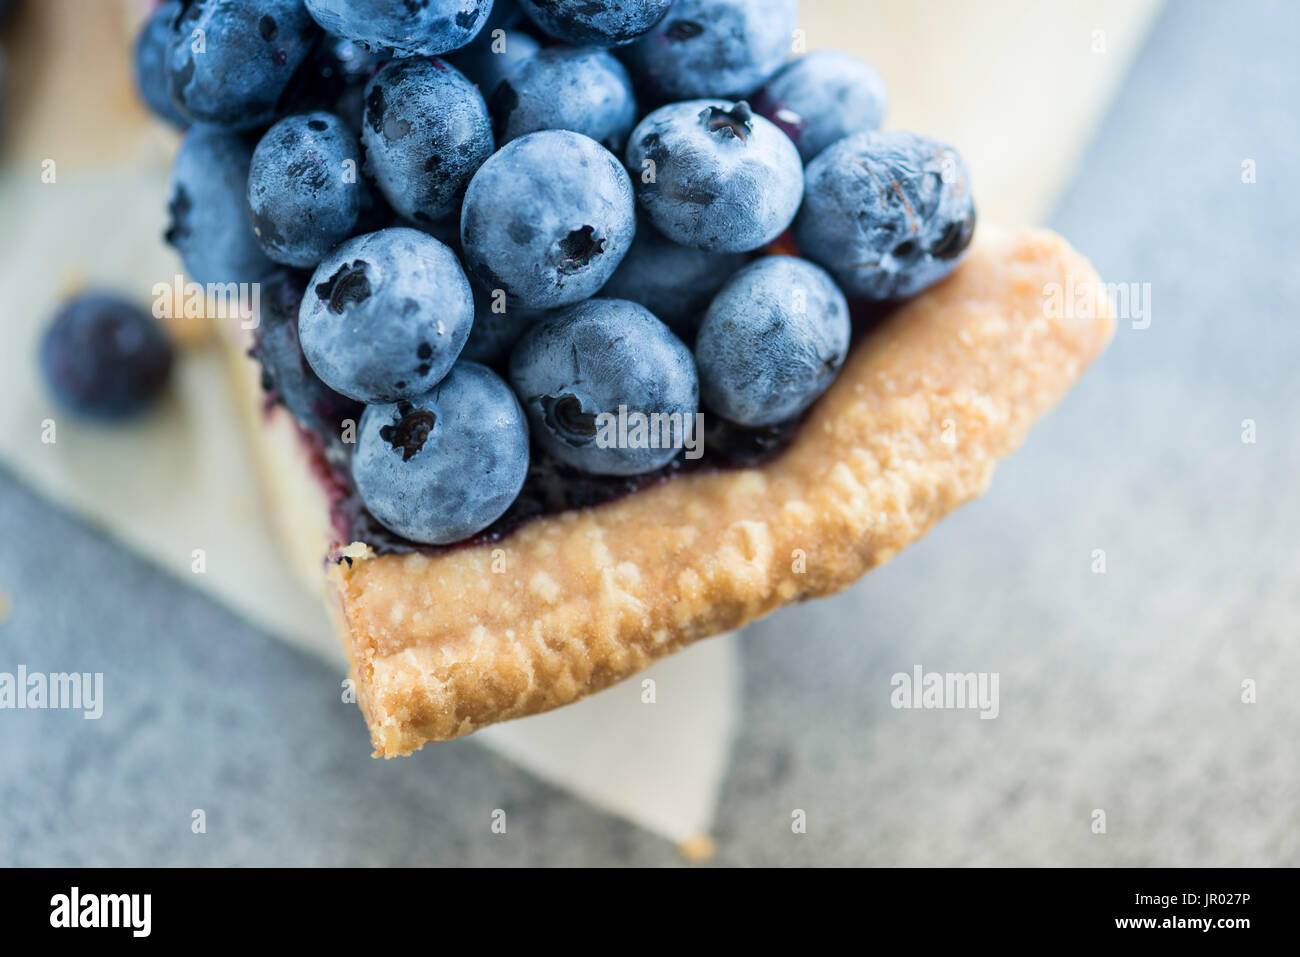 blue berries pie Stock Photo